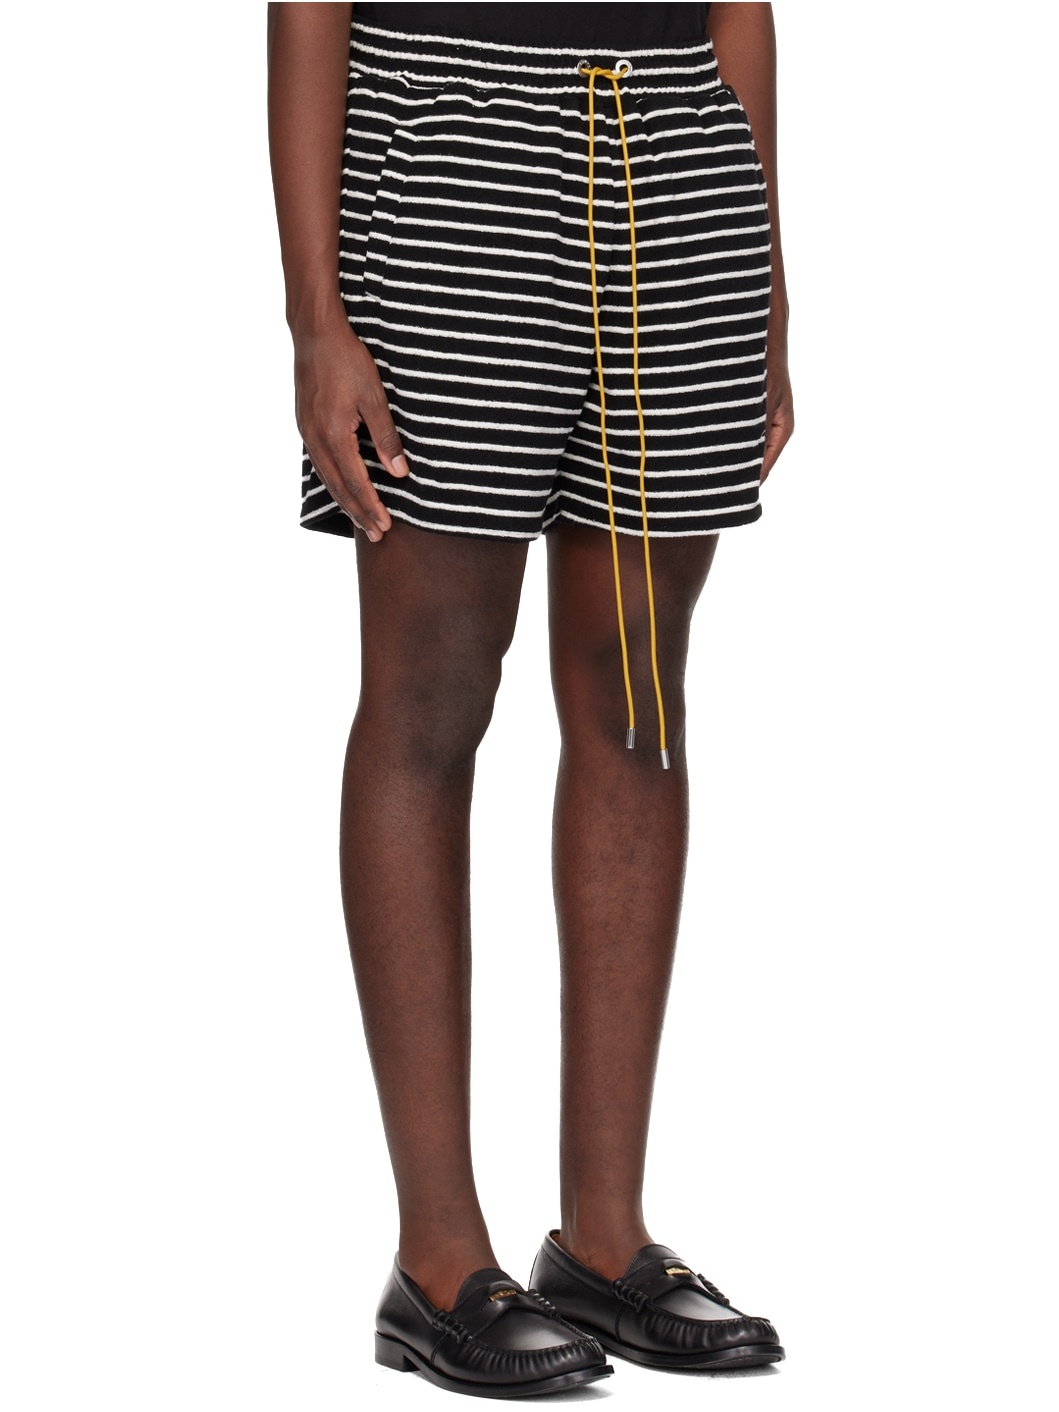 Black & White Striped Shorts - 2